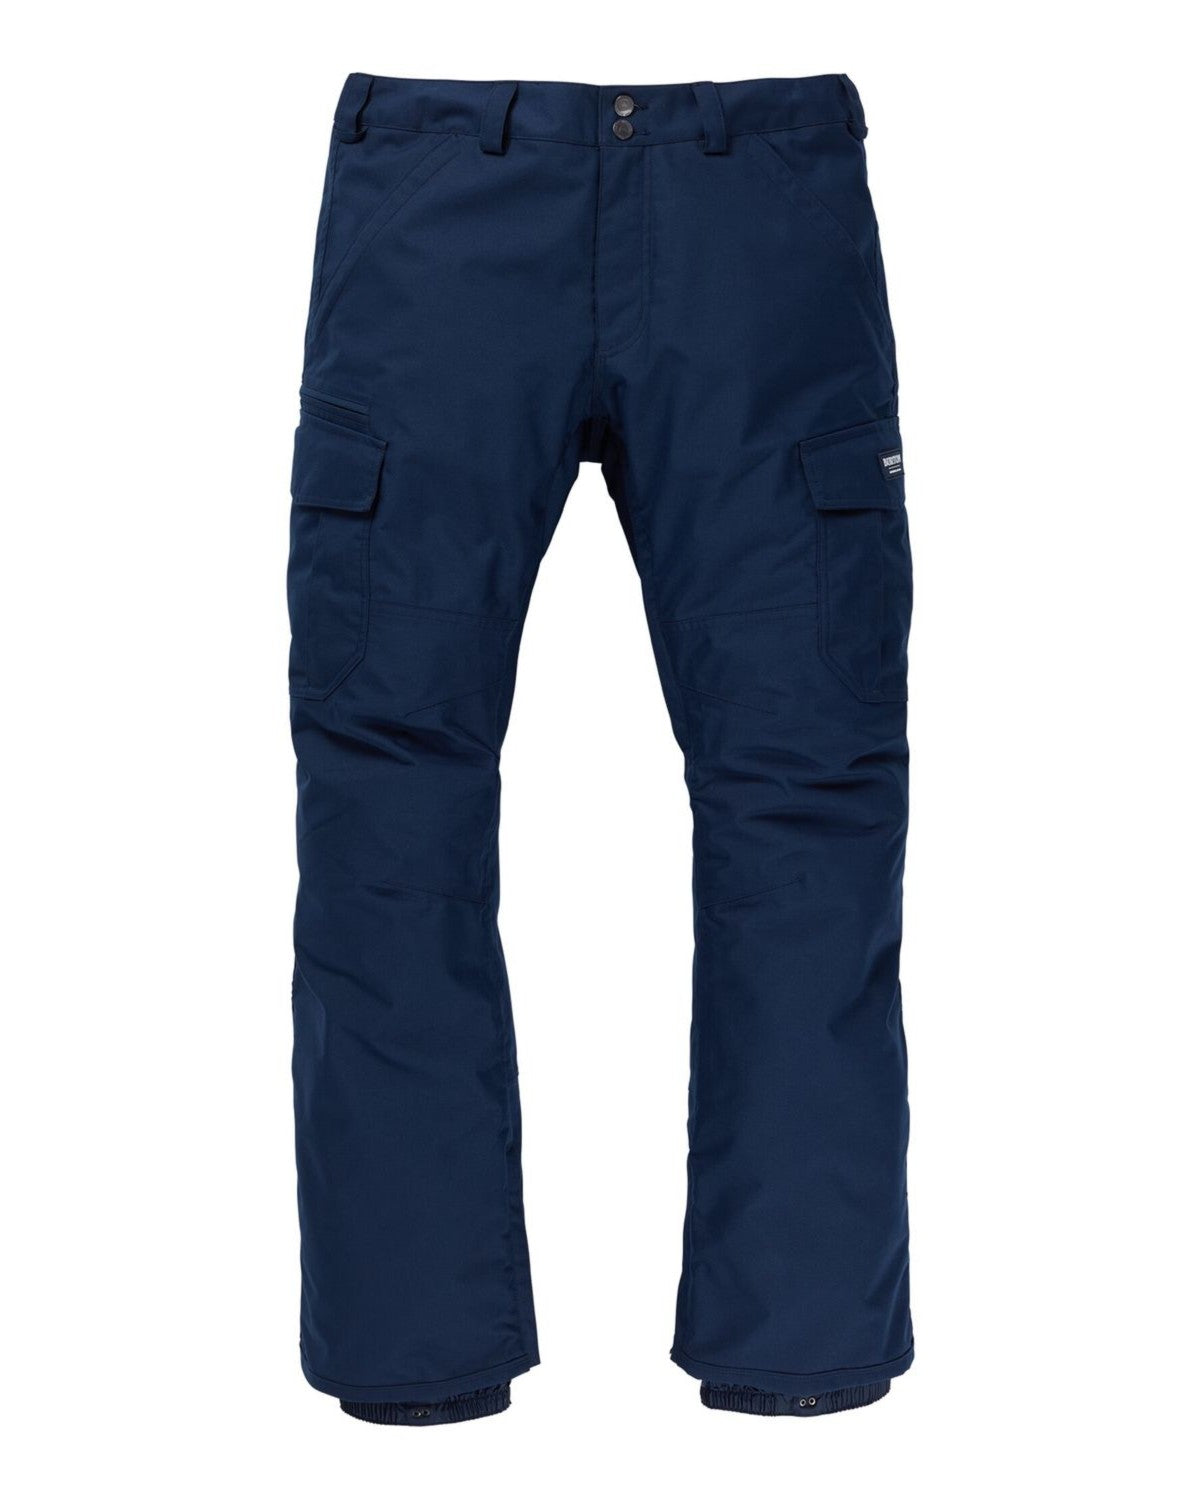 Men's Burton 2L Cargo Pants - Relaxed Fit Dress Blue Snow Pants